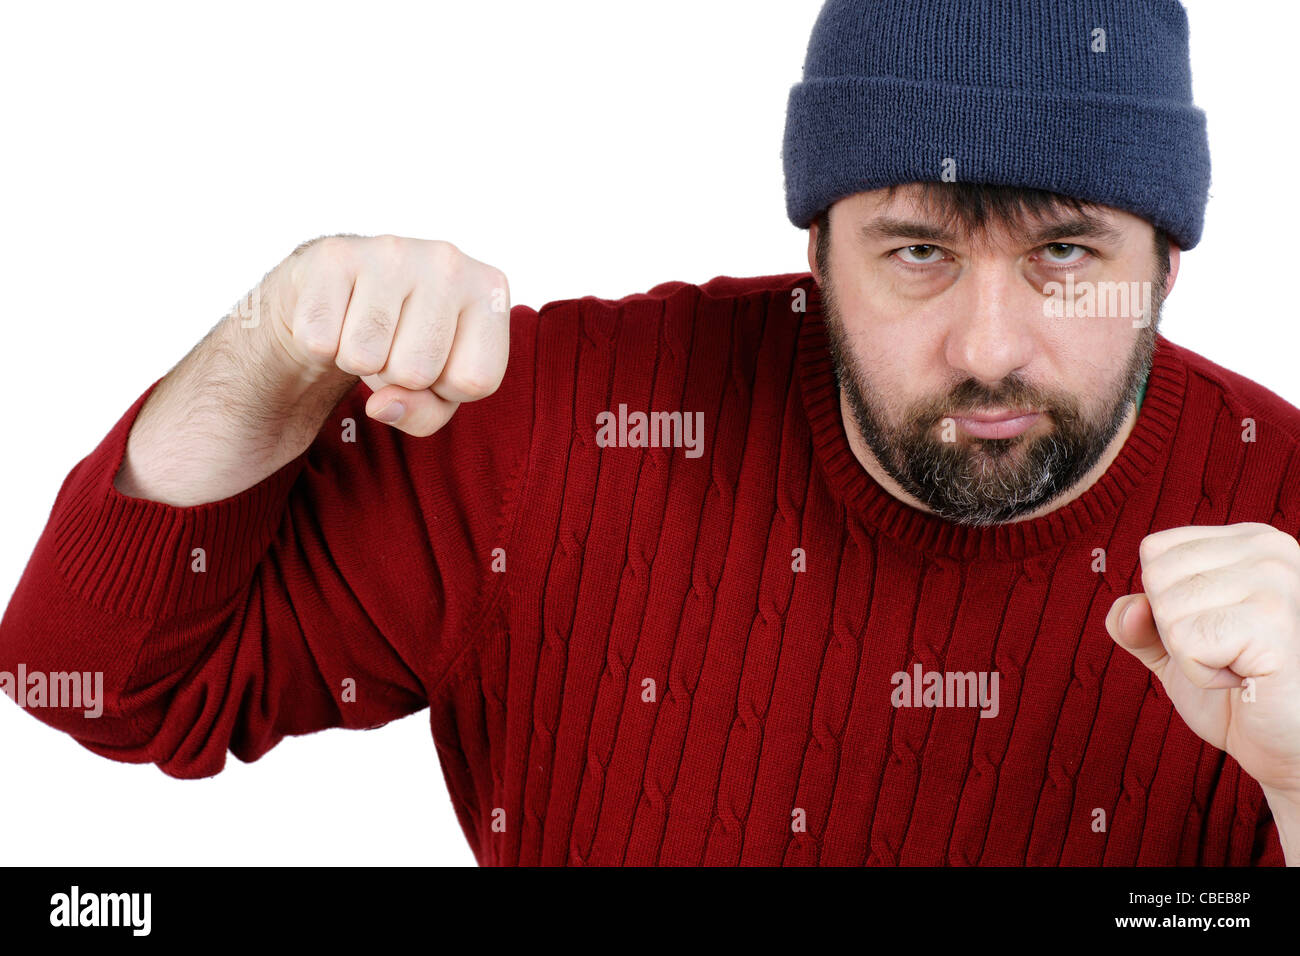 Gran hombre de mediana edad con barba durante una pelea, listo para perforar, aislado en blanco Foto de stock